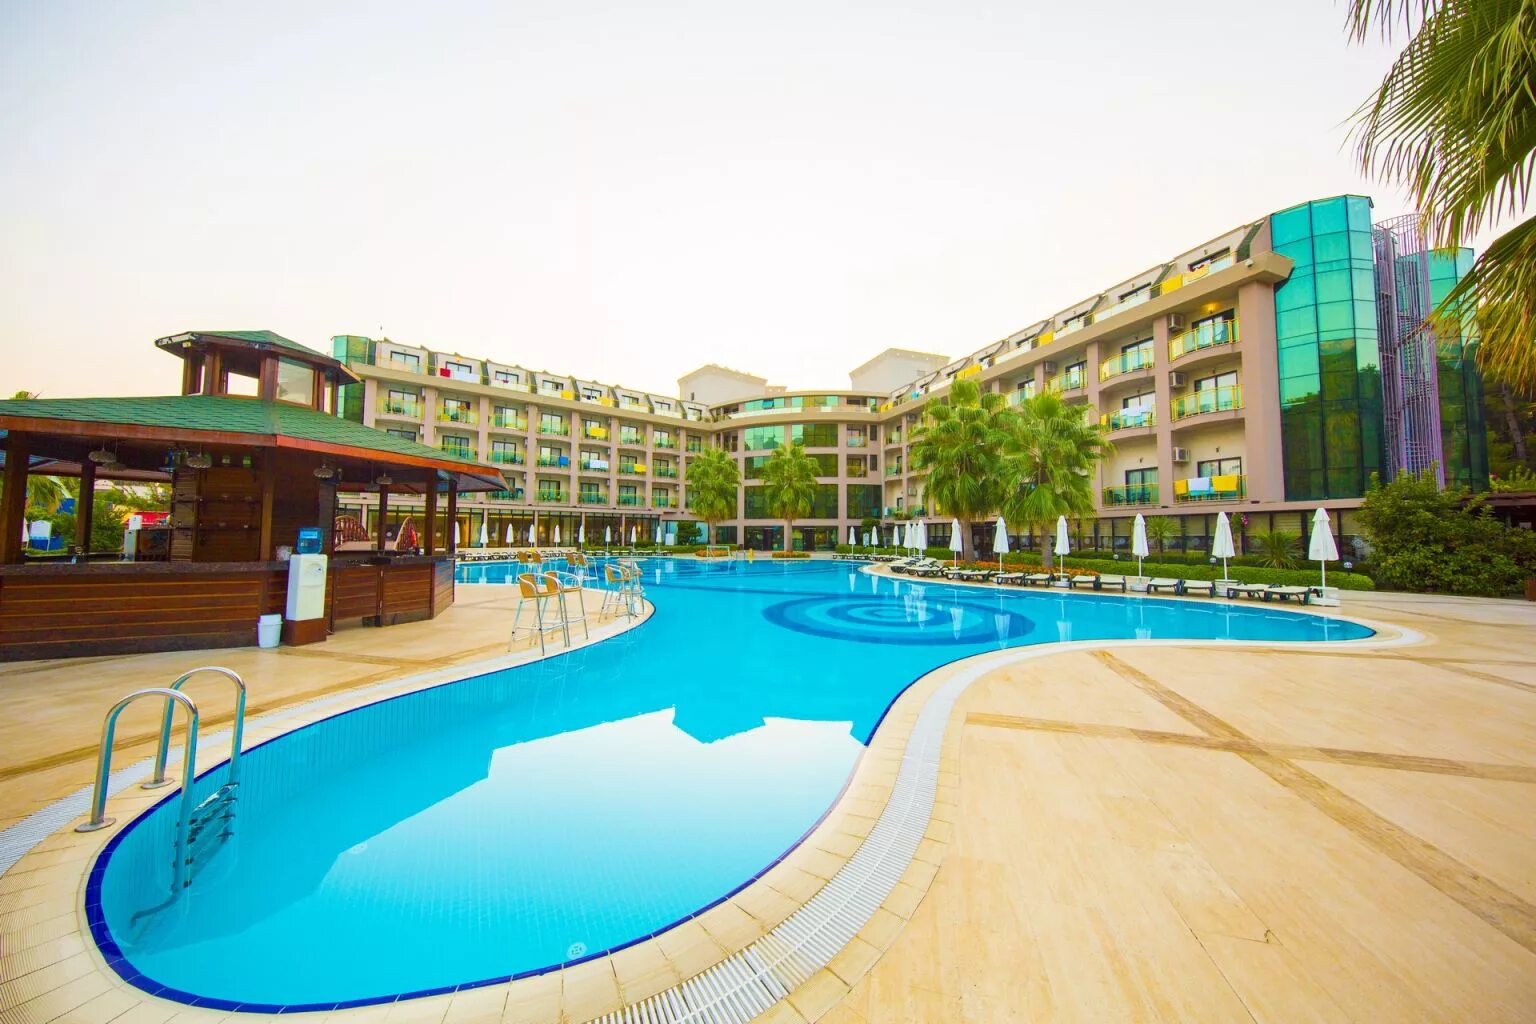 Отель Eldar Resort 4 Турция. Eldar garden resort hotel кемер